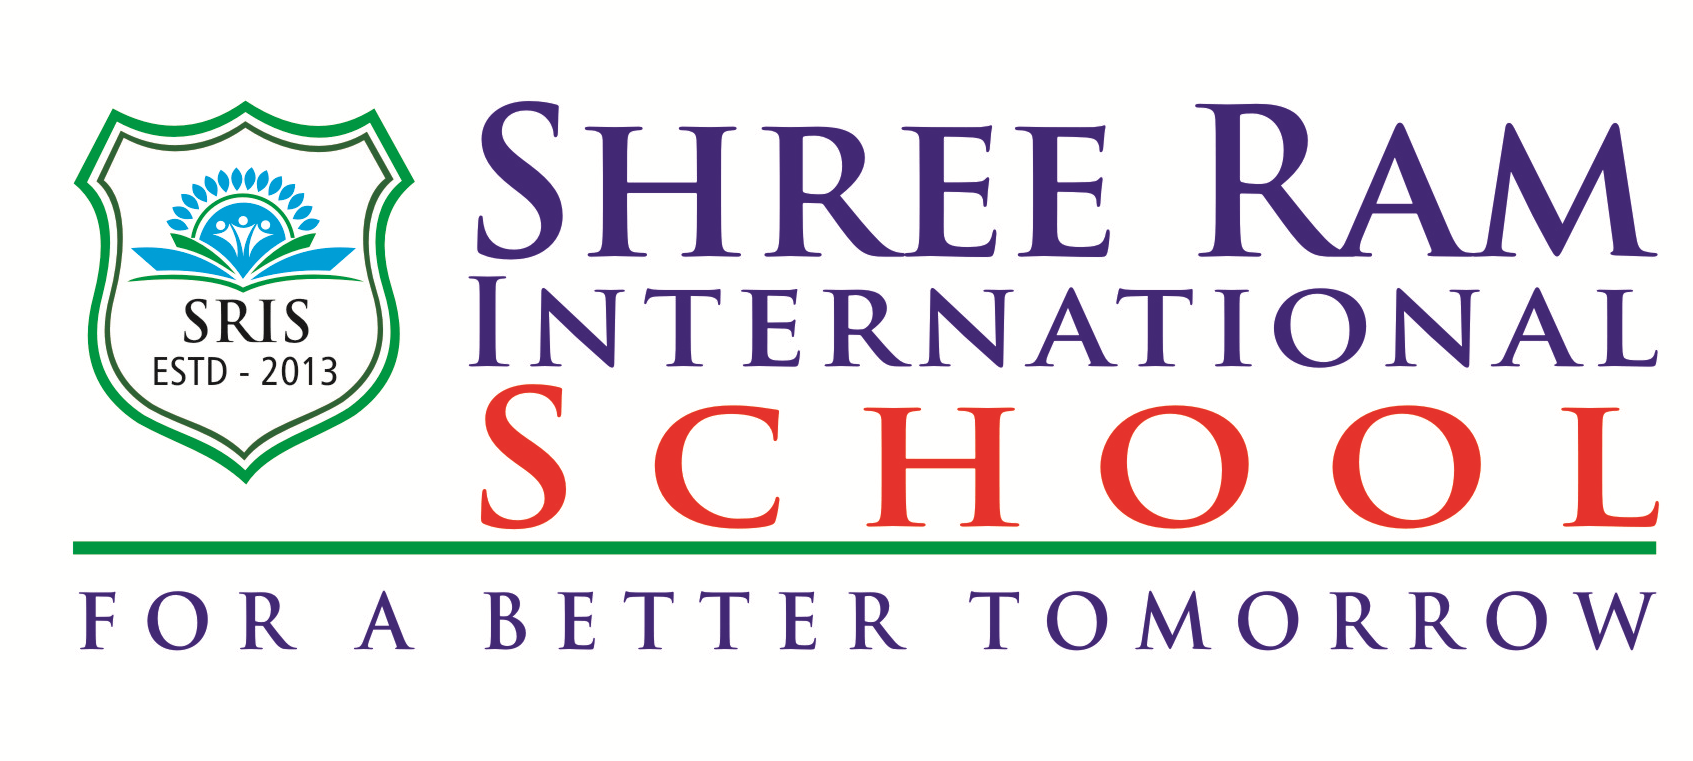 Sreeram International School